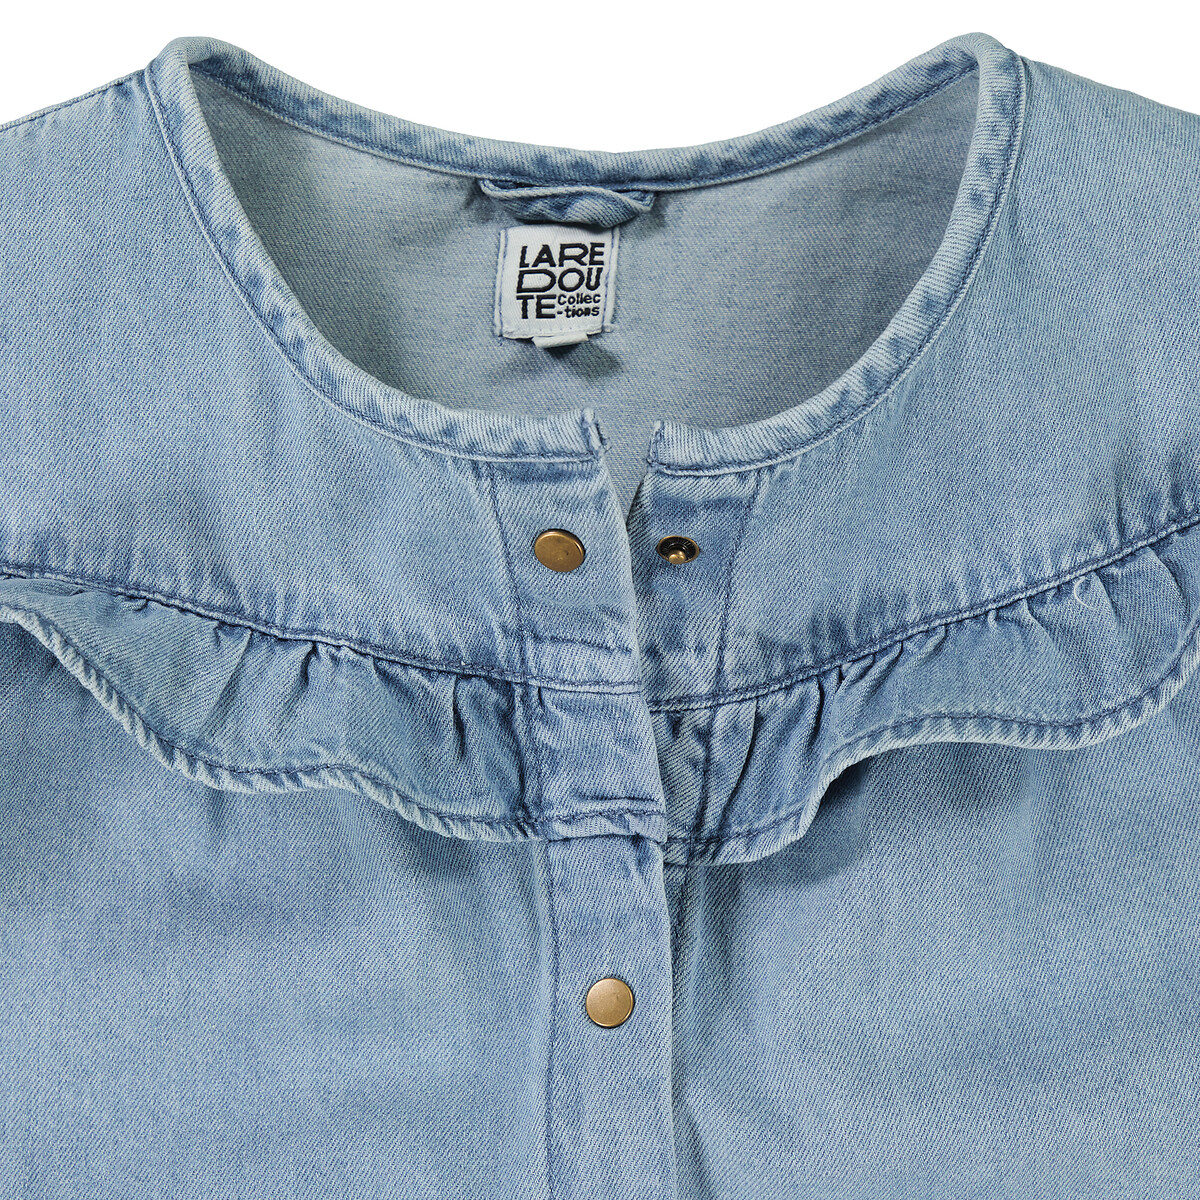 Блуза Из джинсовой ткани 12 лет -150 см синий LaRedoute, размер 12 лет -150 см - фото 5